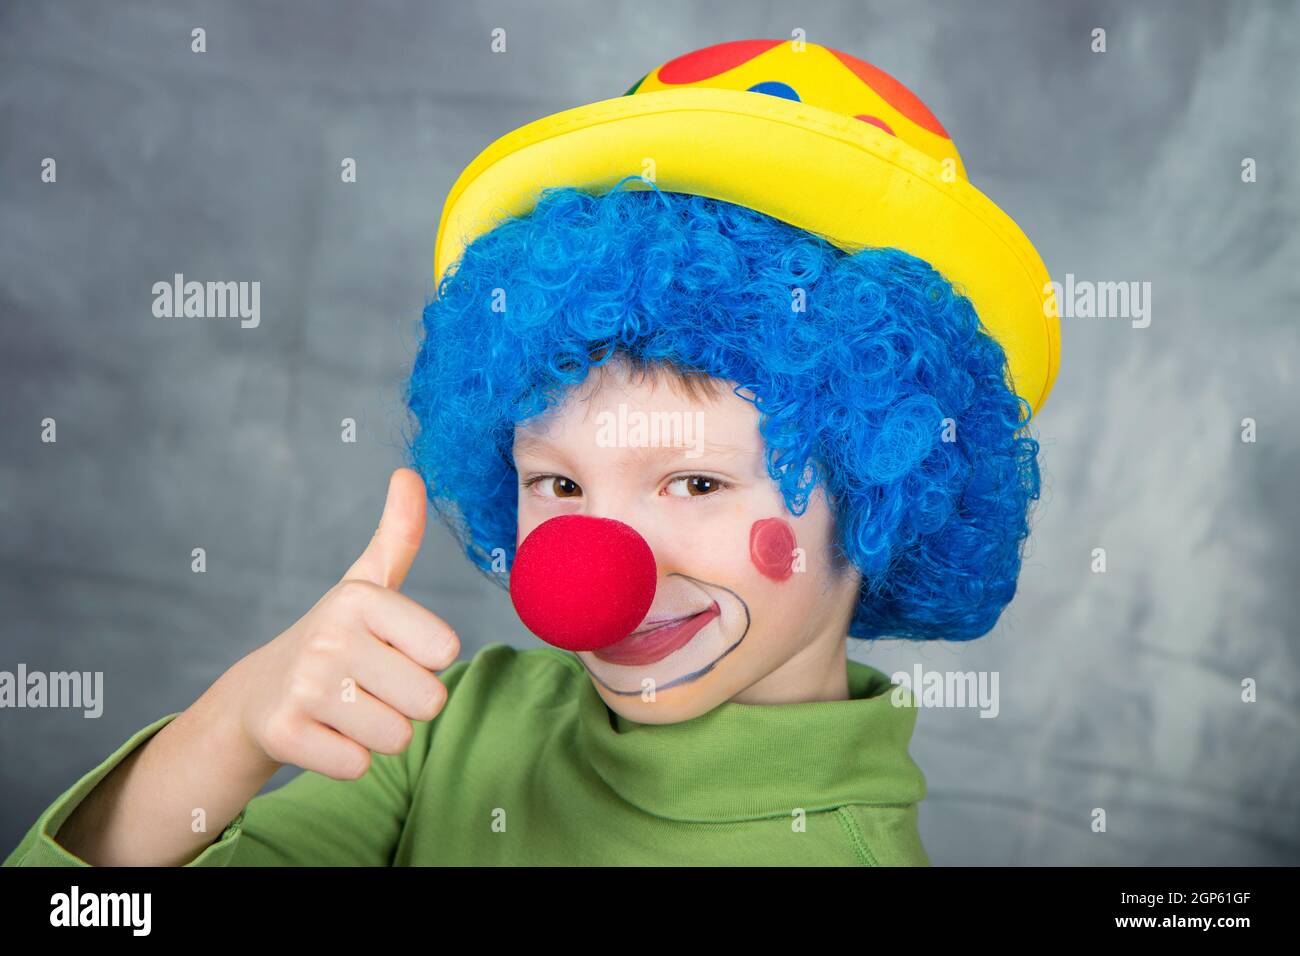 Pagliaccio Del Bambino Con Una Parrucca Multicolore Del Naso Rosso Dentro  Con Le Palle Fotografia Stock - Immagine di luminoso, dell: 86540302